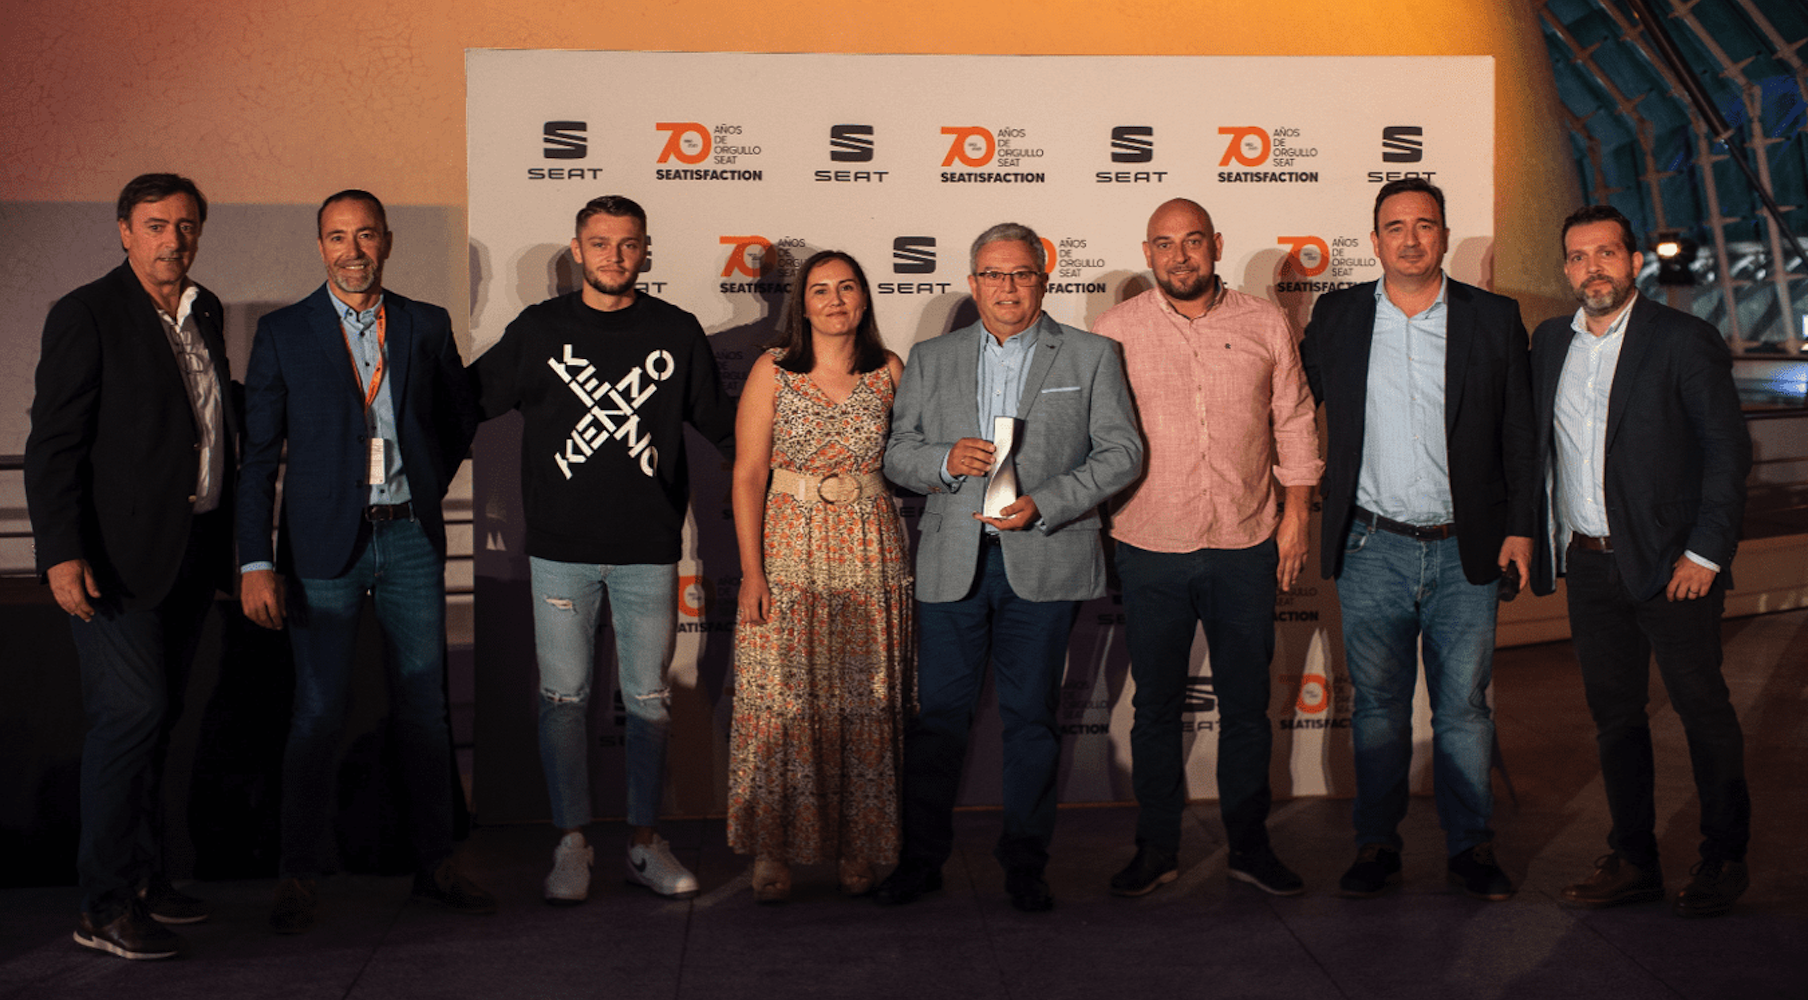 El equipo de Navarro Segura recoge el Premio SEATisfaction 2020